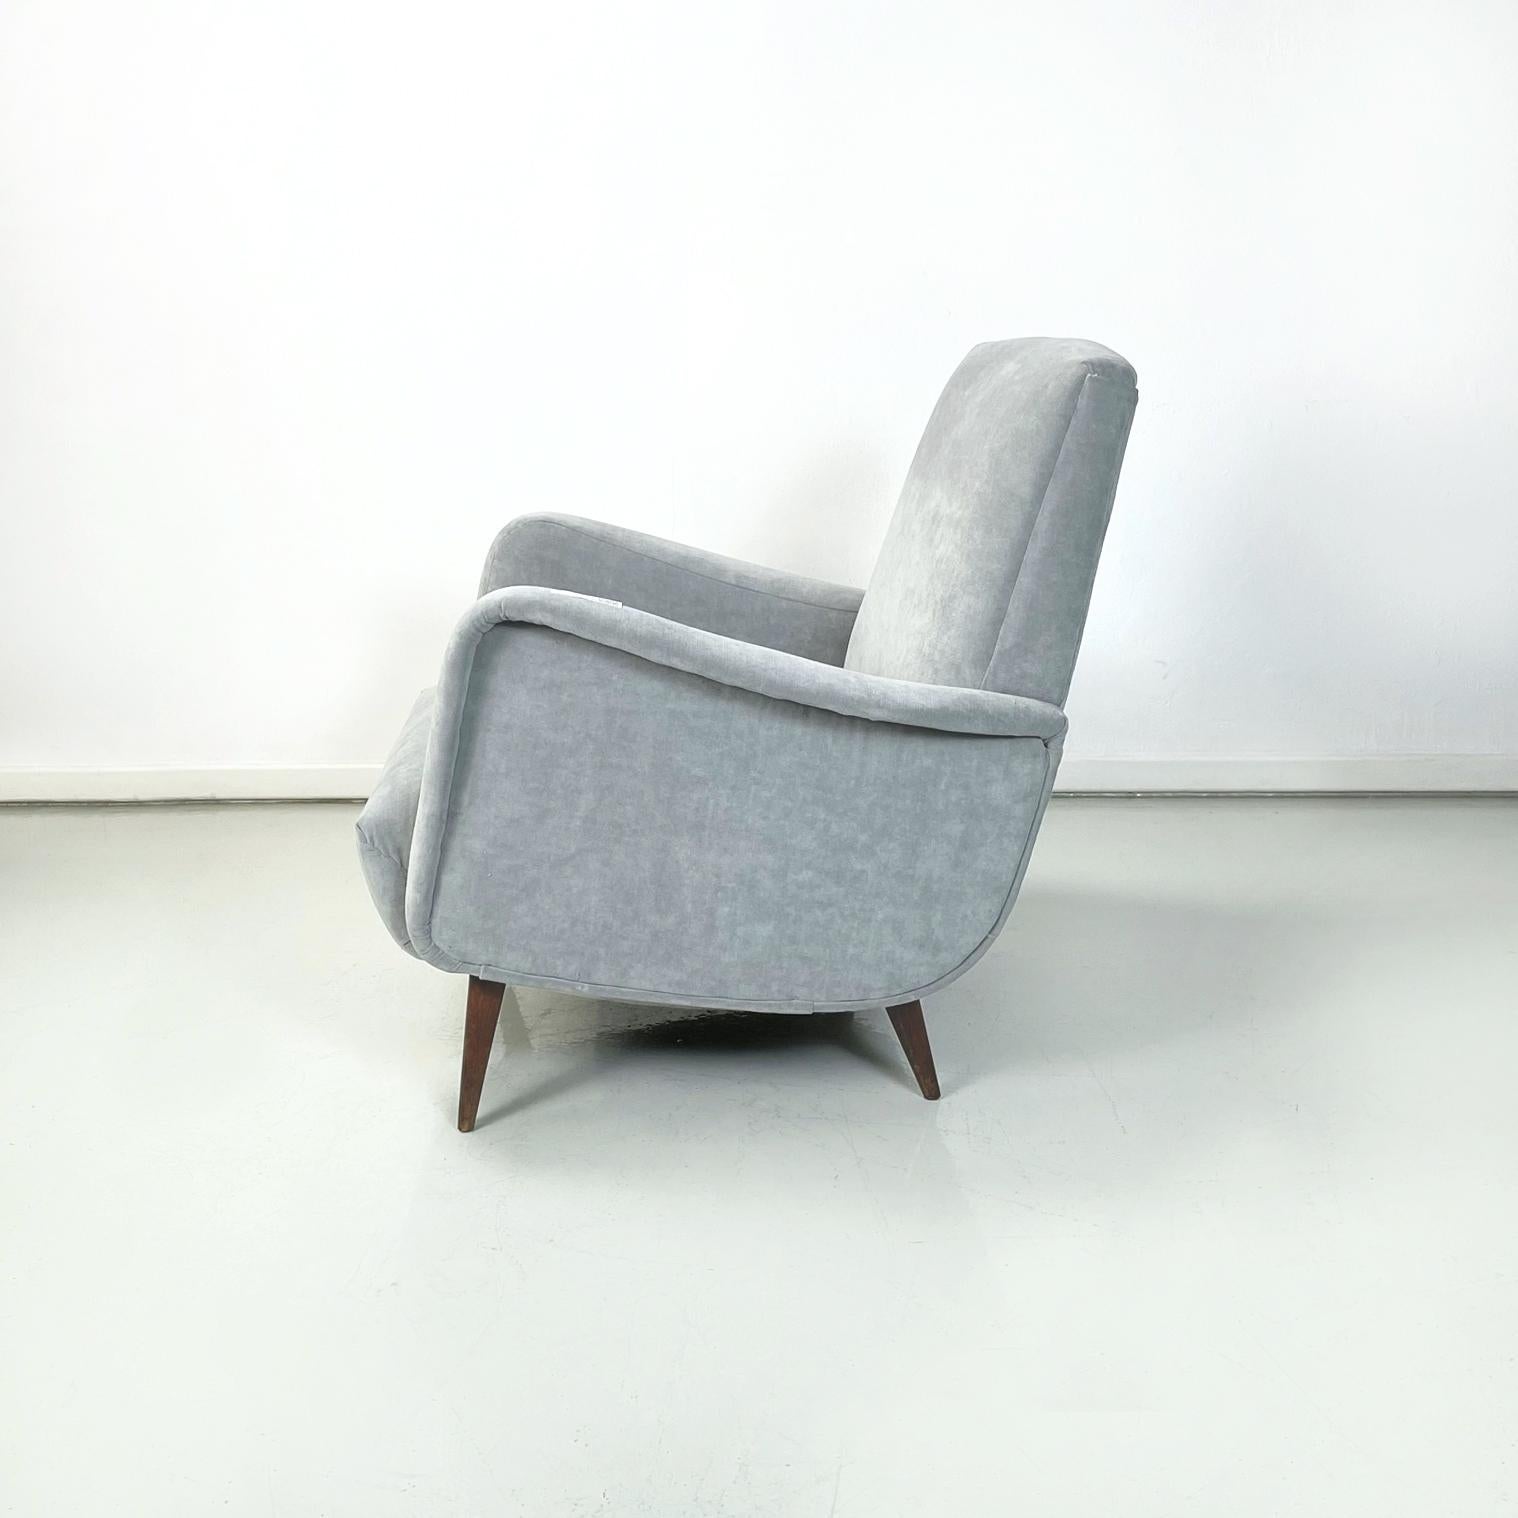 Mid-20th Century Italian Mid-Century Modern Armchairs in Light Gray Velvet and Wood, 1960s